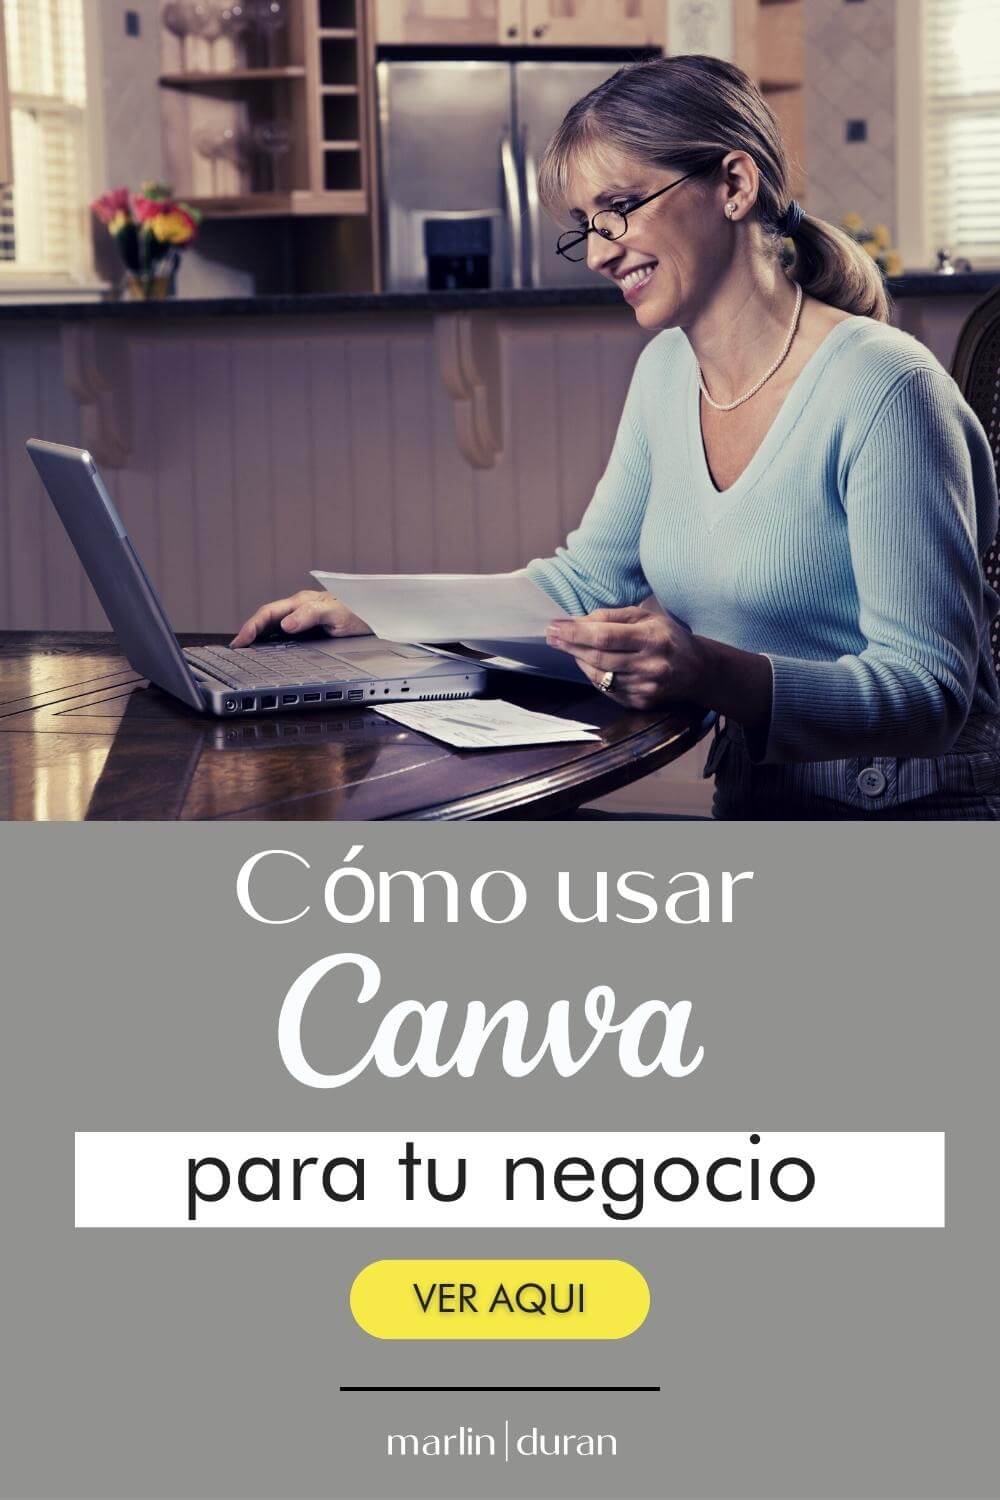 Una imagen vertical con el título 'cómo usar Canva para tu negocio' y una mujer adulta con lentes como imagen de fondo, viendo su computadora